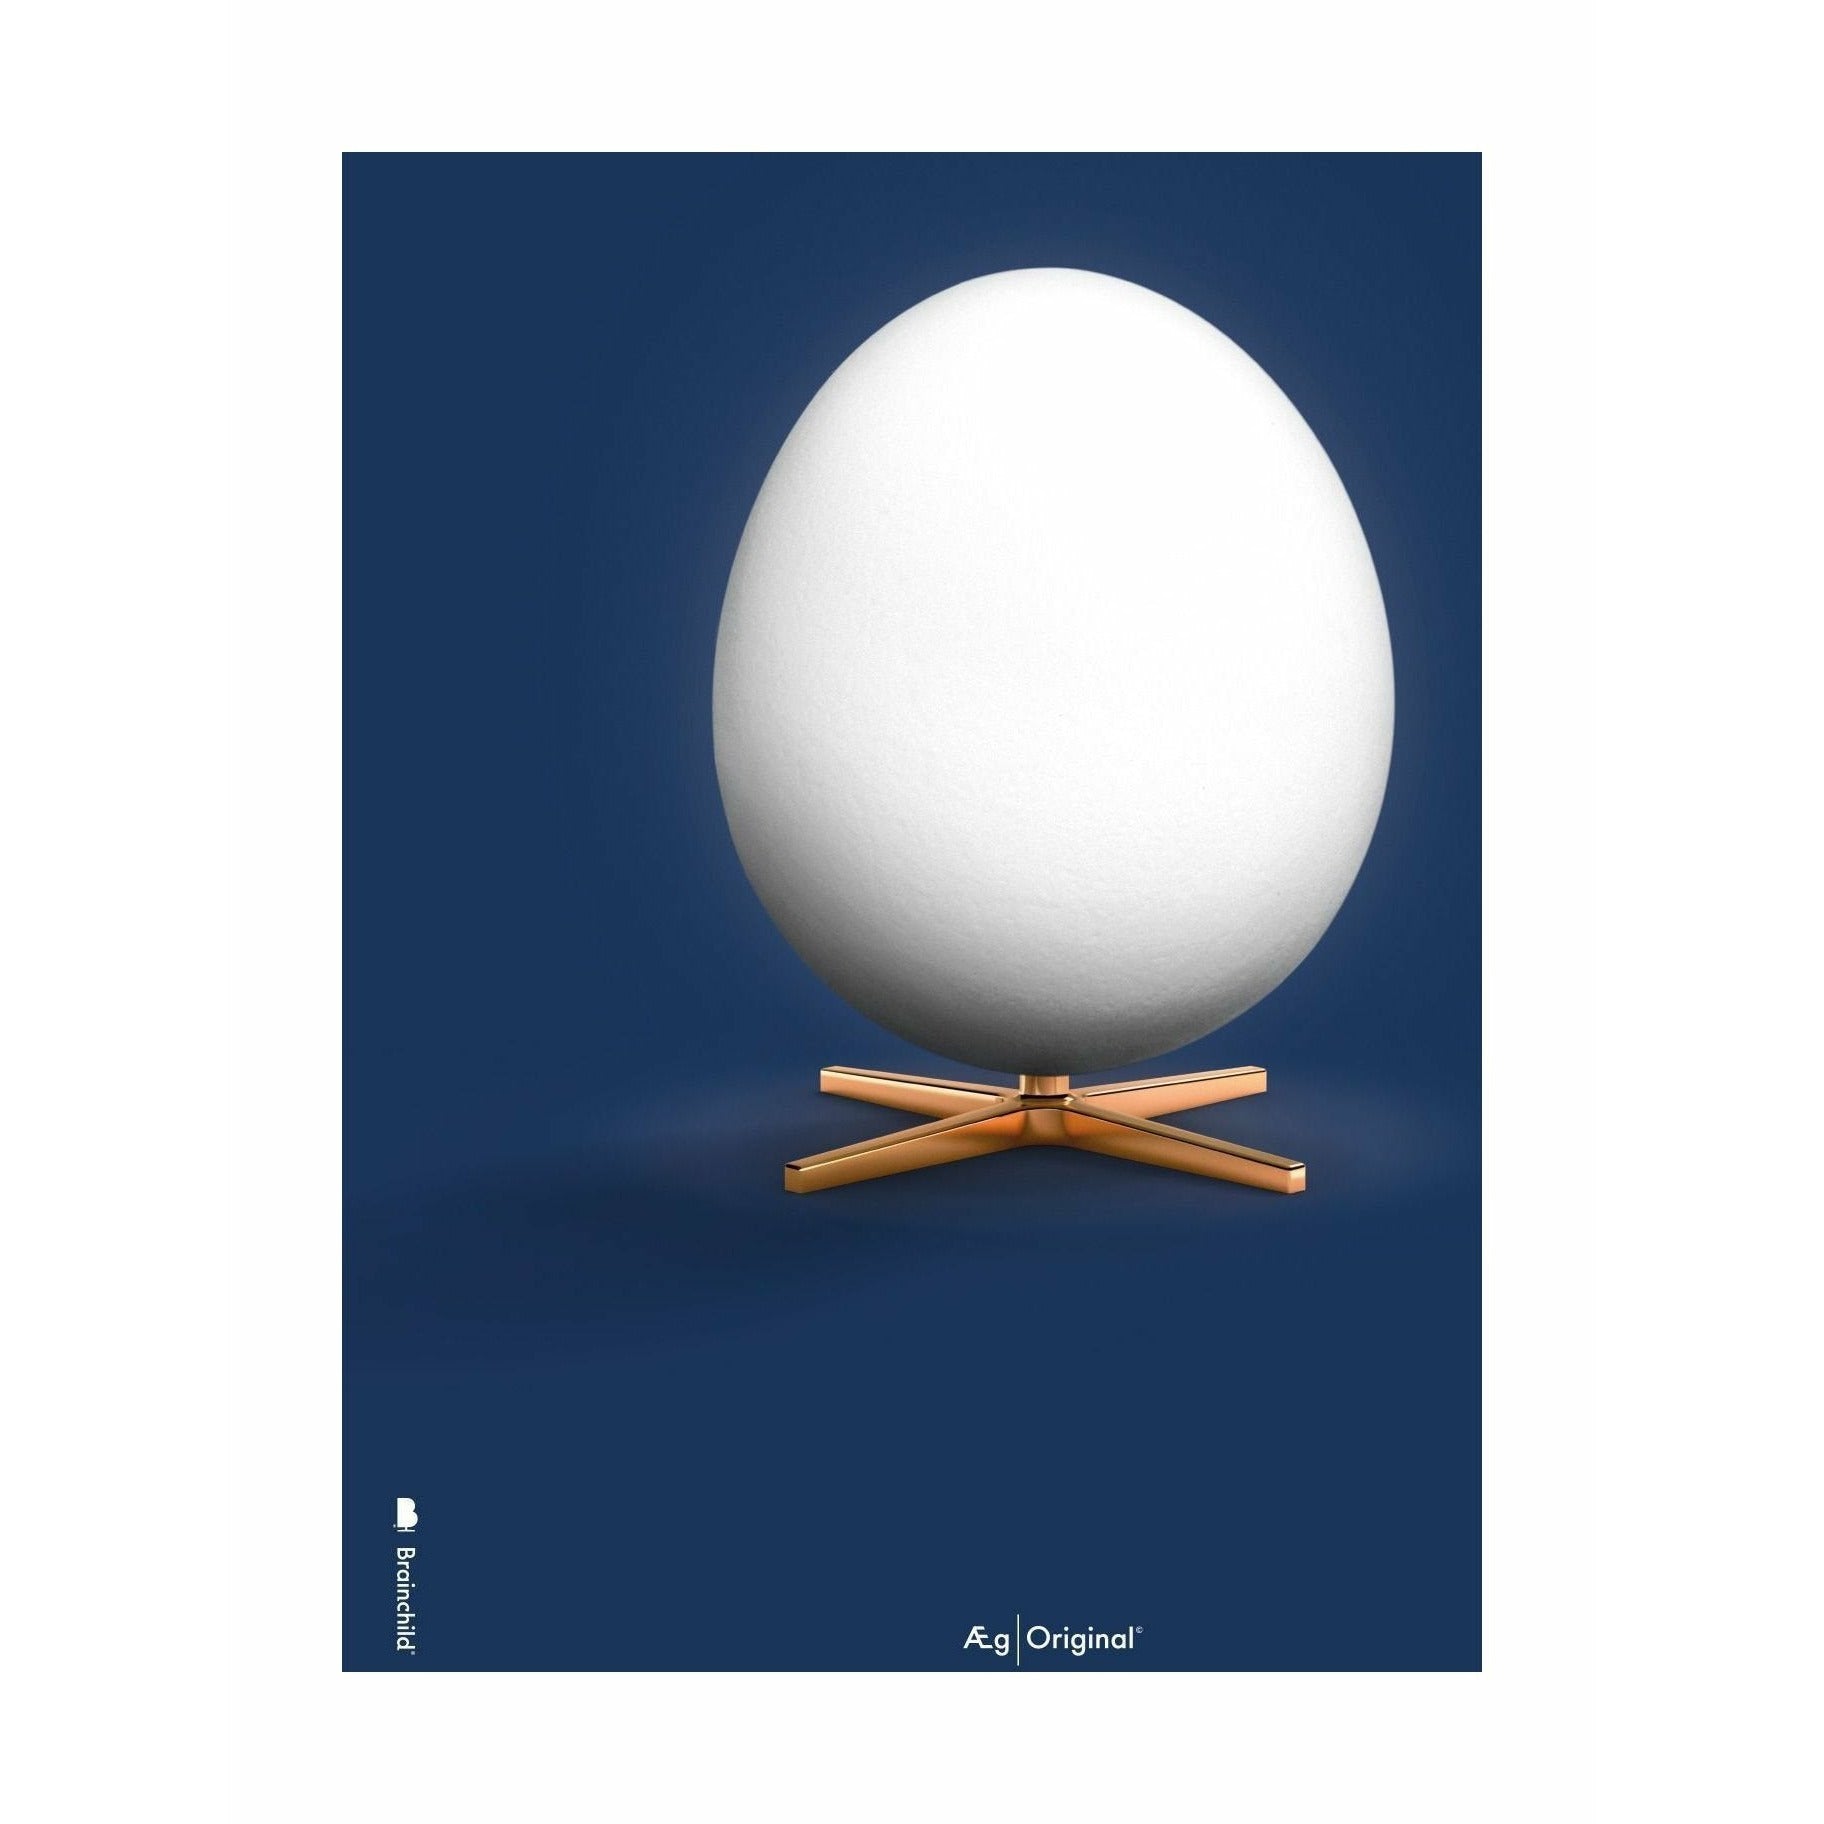 brainchild Egg Classic juliste ilman kehystä 50 x70 cm, tummansininen tausta